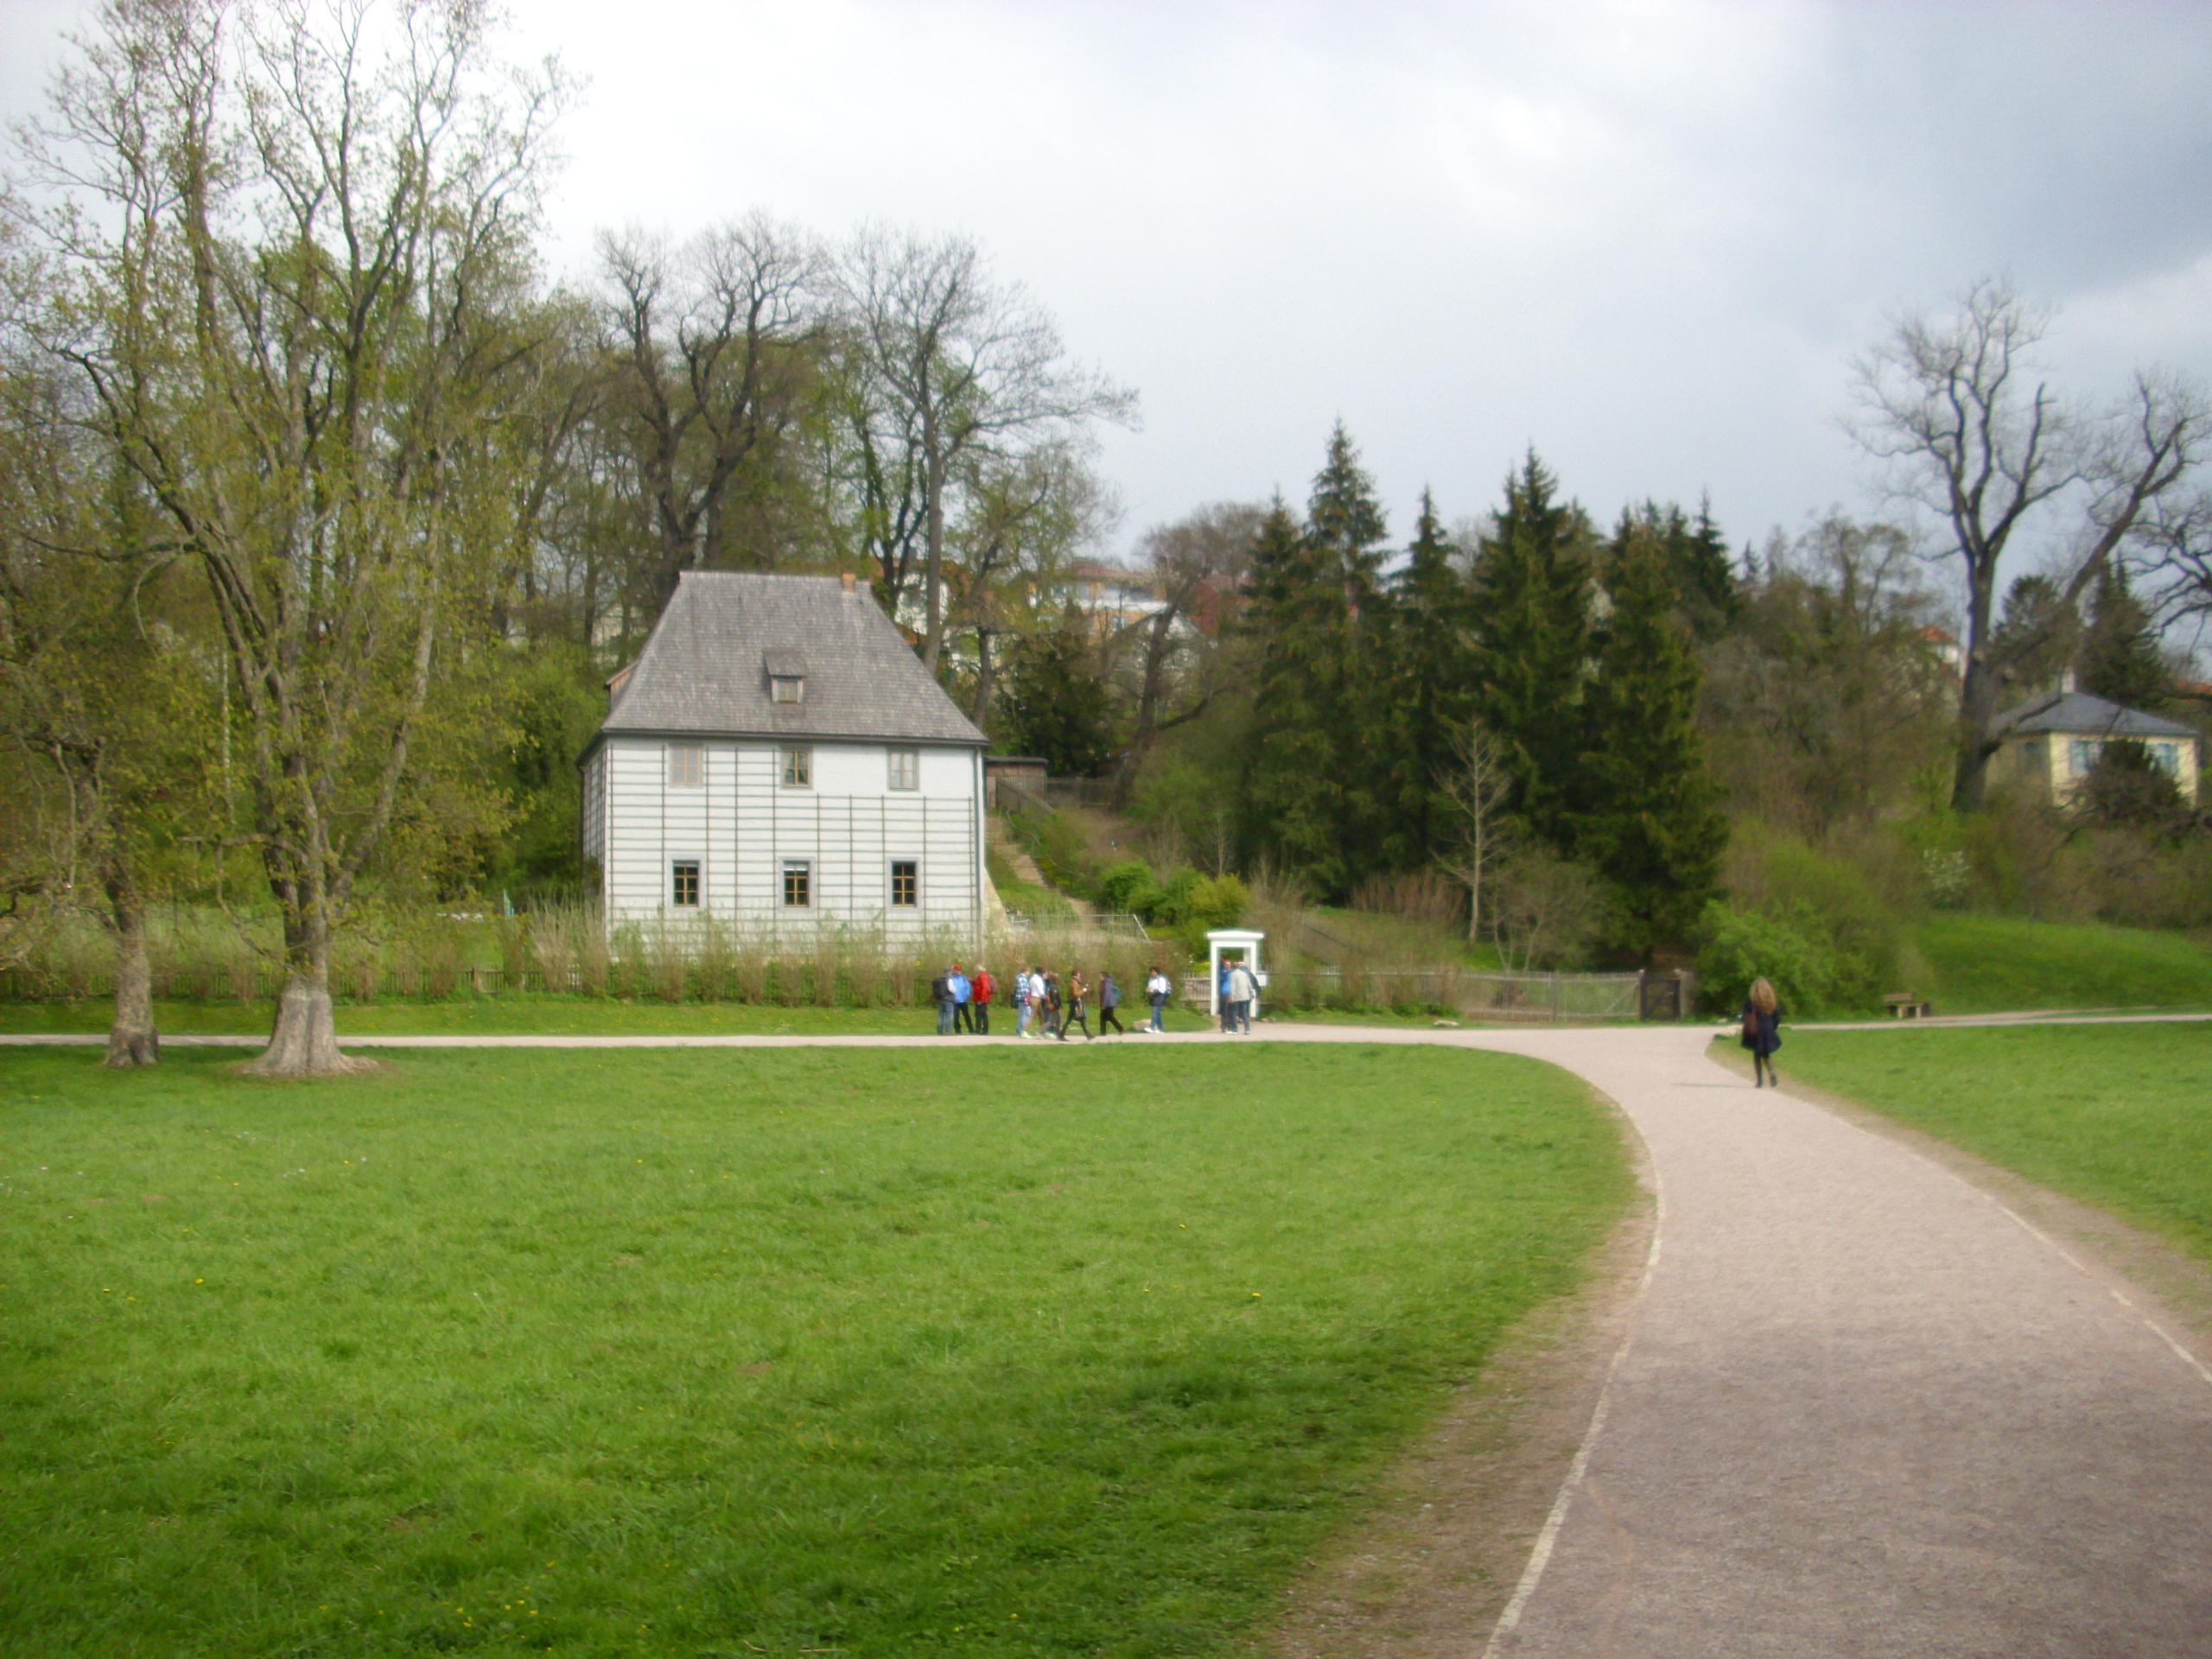 Farbfoto: Goethes Gartenhaus und das Pogwischhaus in Weimar im April des Jahres 2012. Fotograf: Bernd Paepcke.